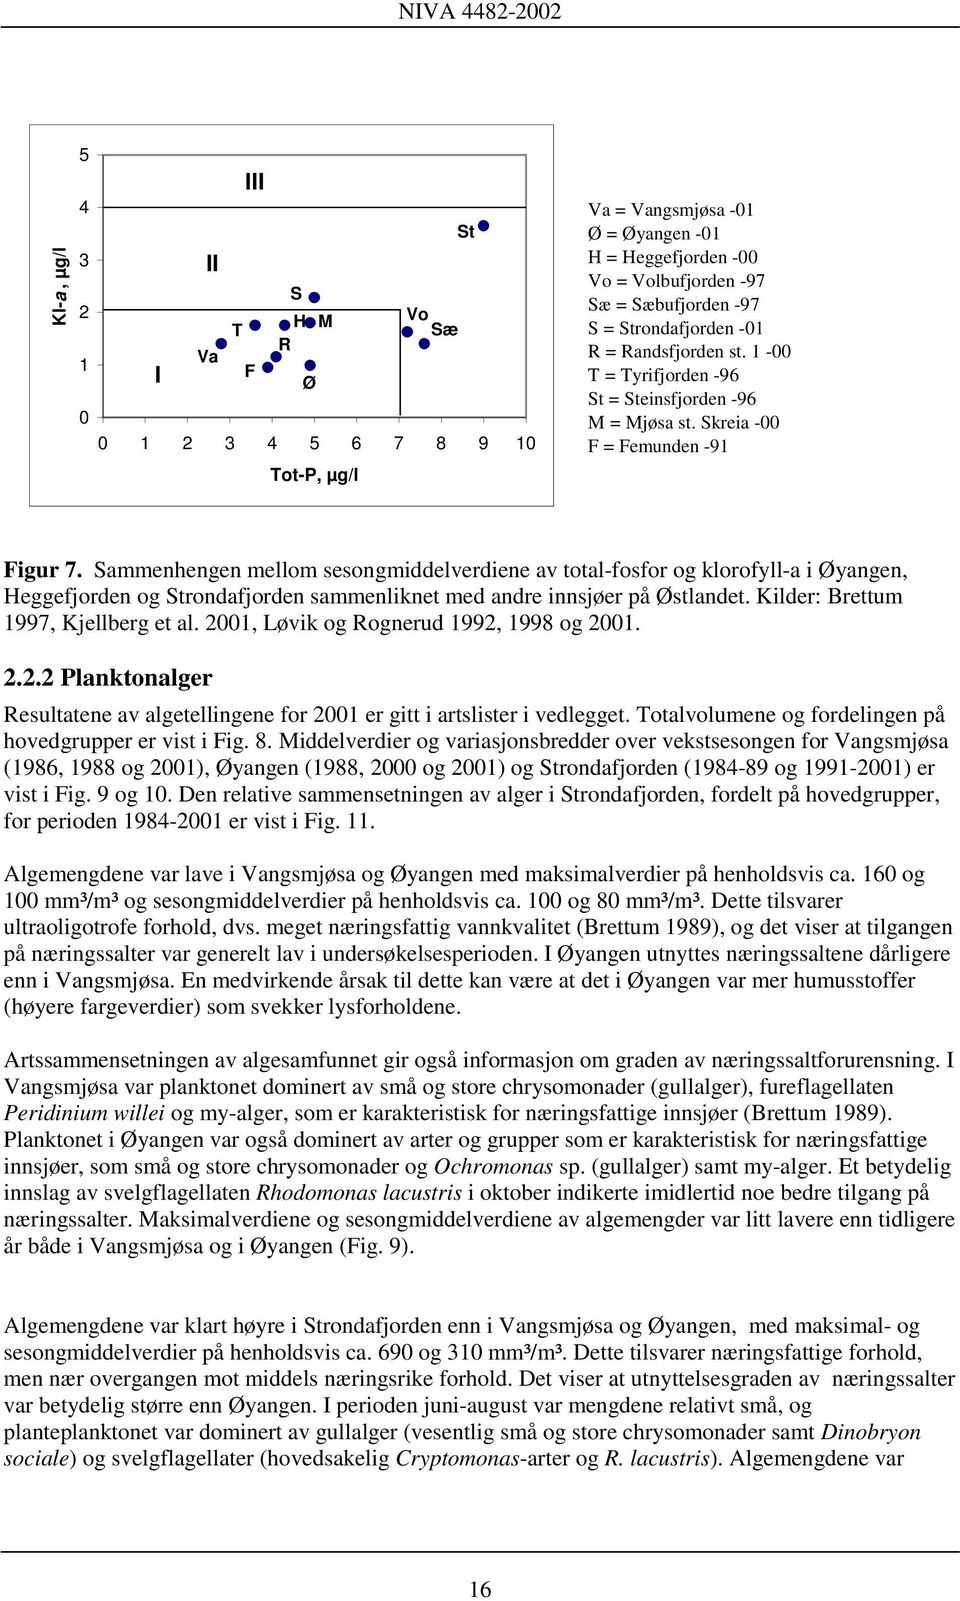 Sammenhengen mellom sesongmiddelverdiene av total-fosfor og klorofyll-a i Øyangen, Heggefjorden og Strondafjorden sammenliknet med andre innsjøer på Østlandet. Kilder: Brettum 1997, Kjellberg et al.